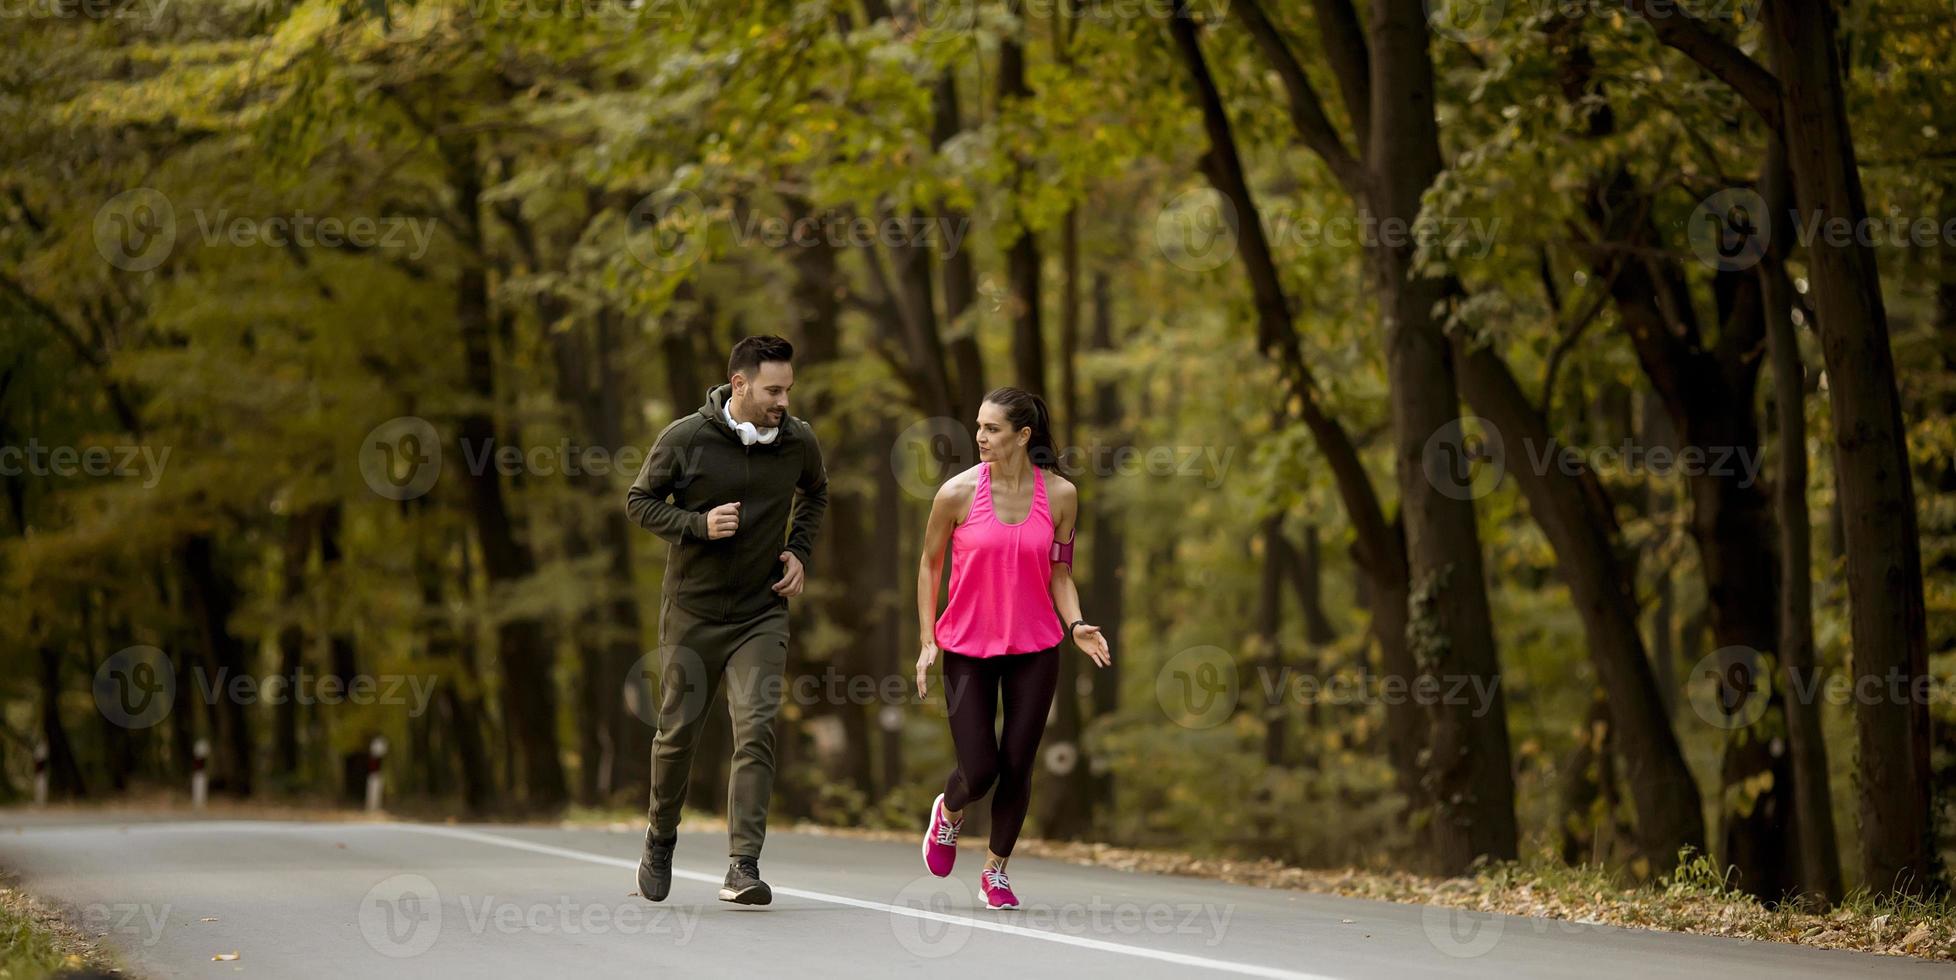 junge menschen joggen und trainieren in der natur foto